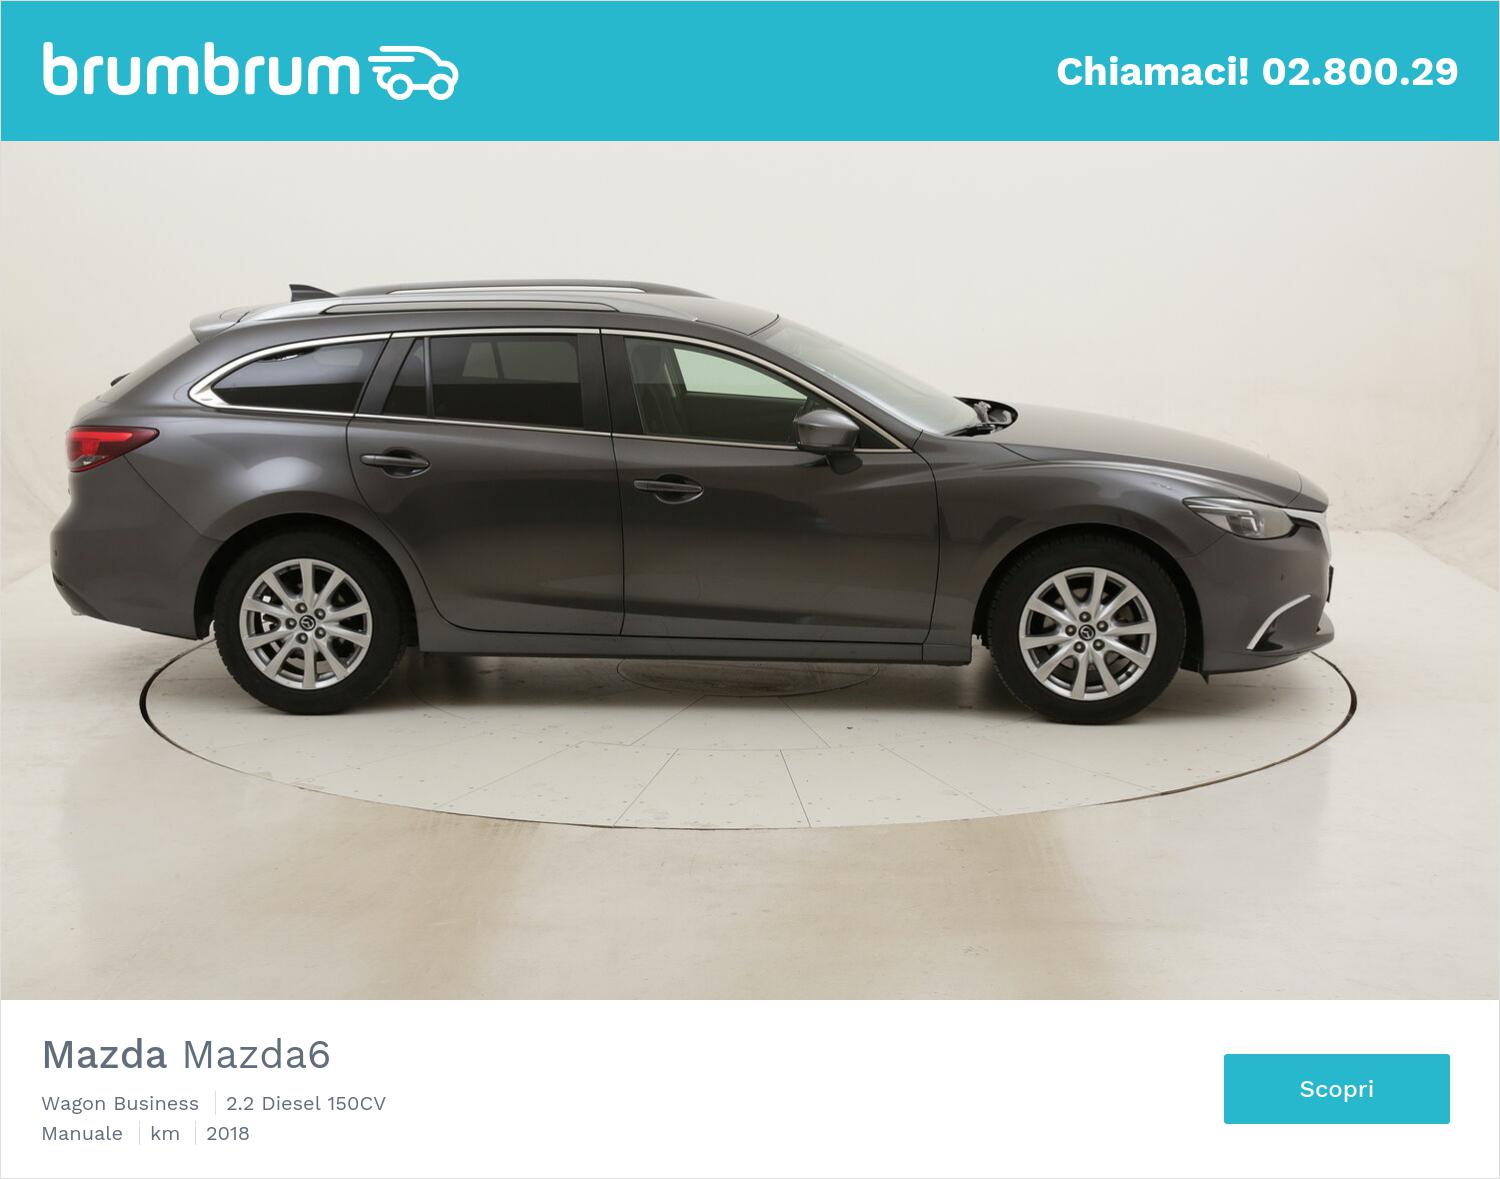 Mazda Mazda6 Wagon Business usata del 2018 con 88.485 km | brumbrum